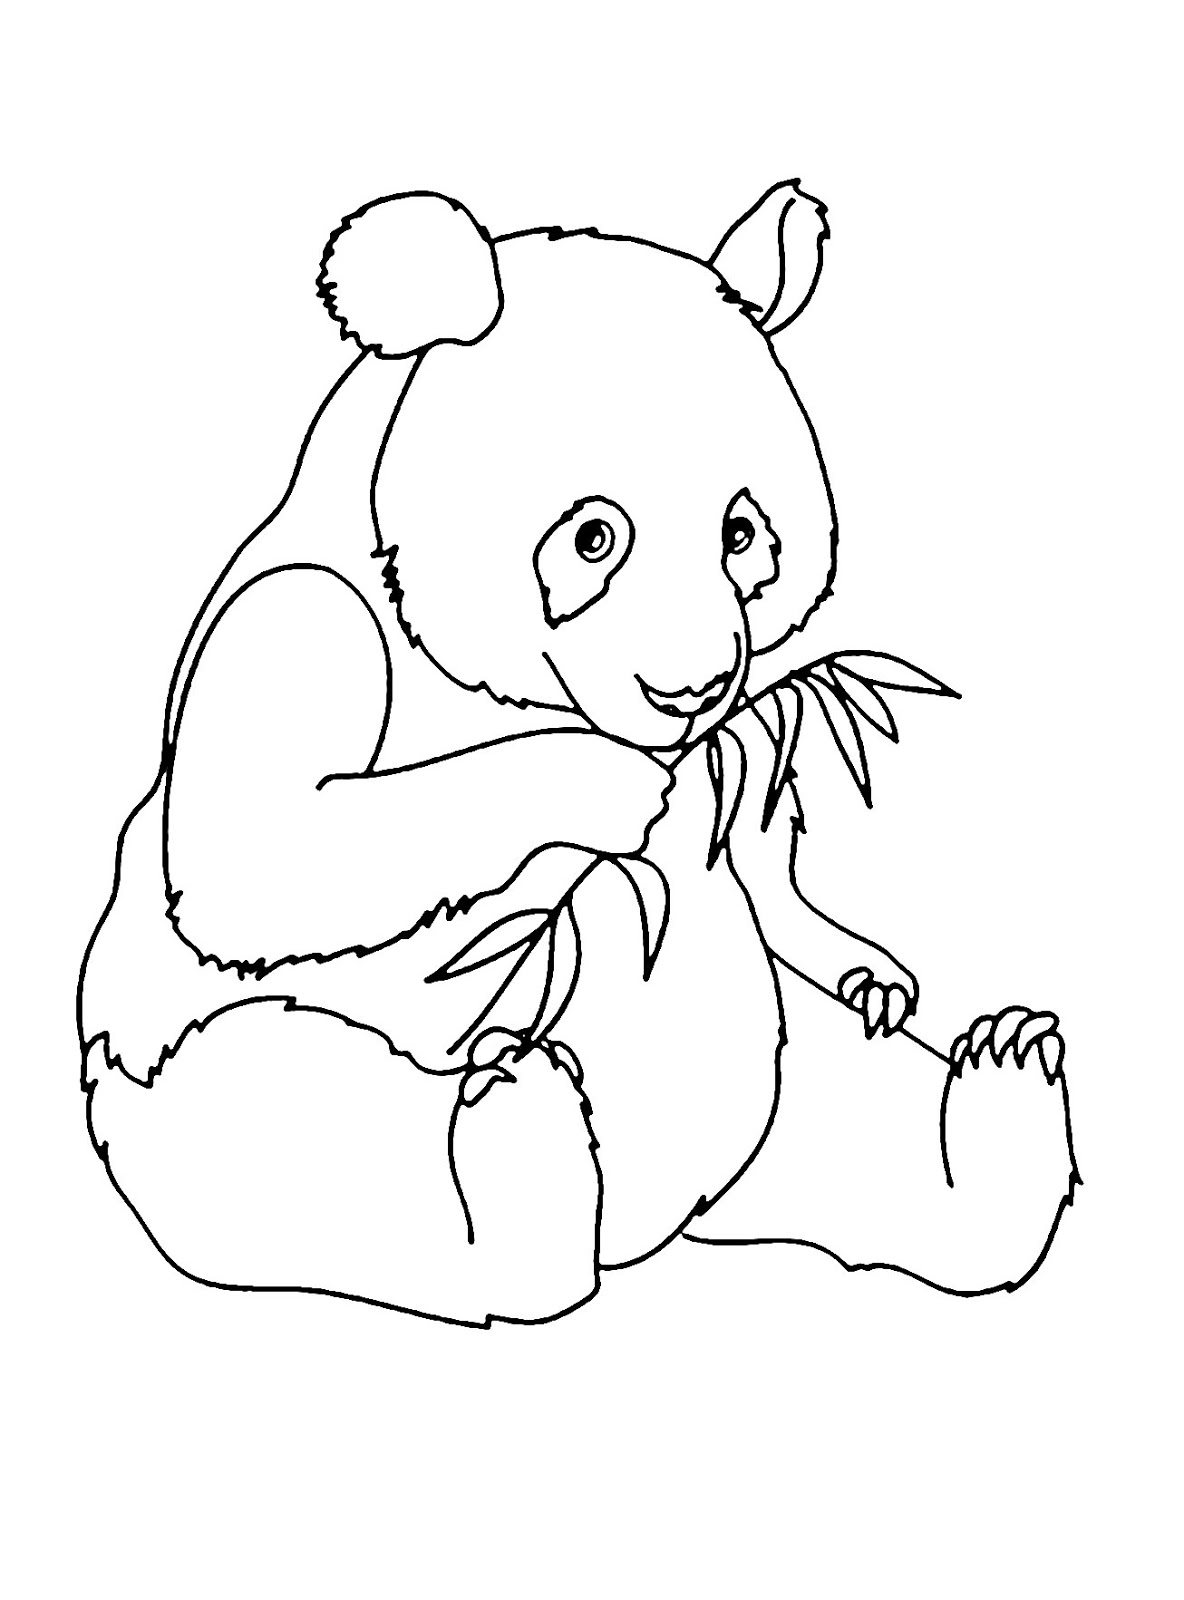 Phát triển khả năng sáng tạo của bé qua bộ tranh tô màu con gấu